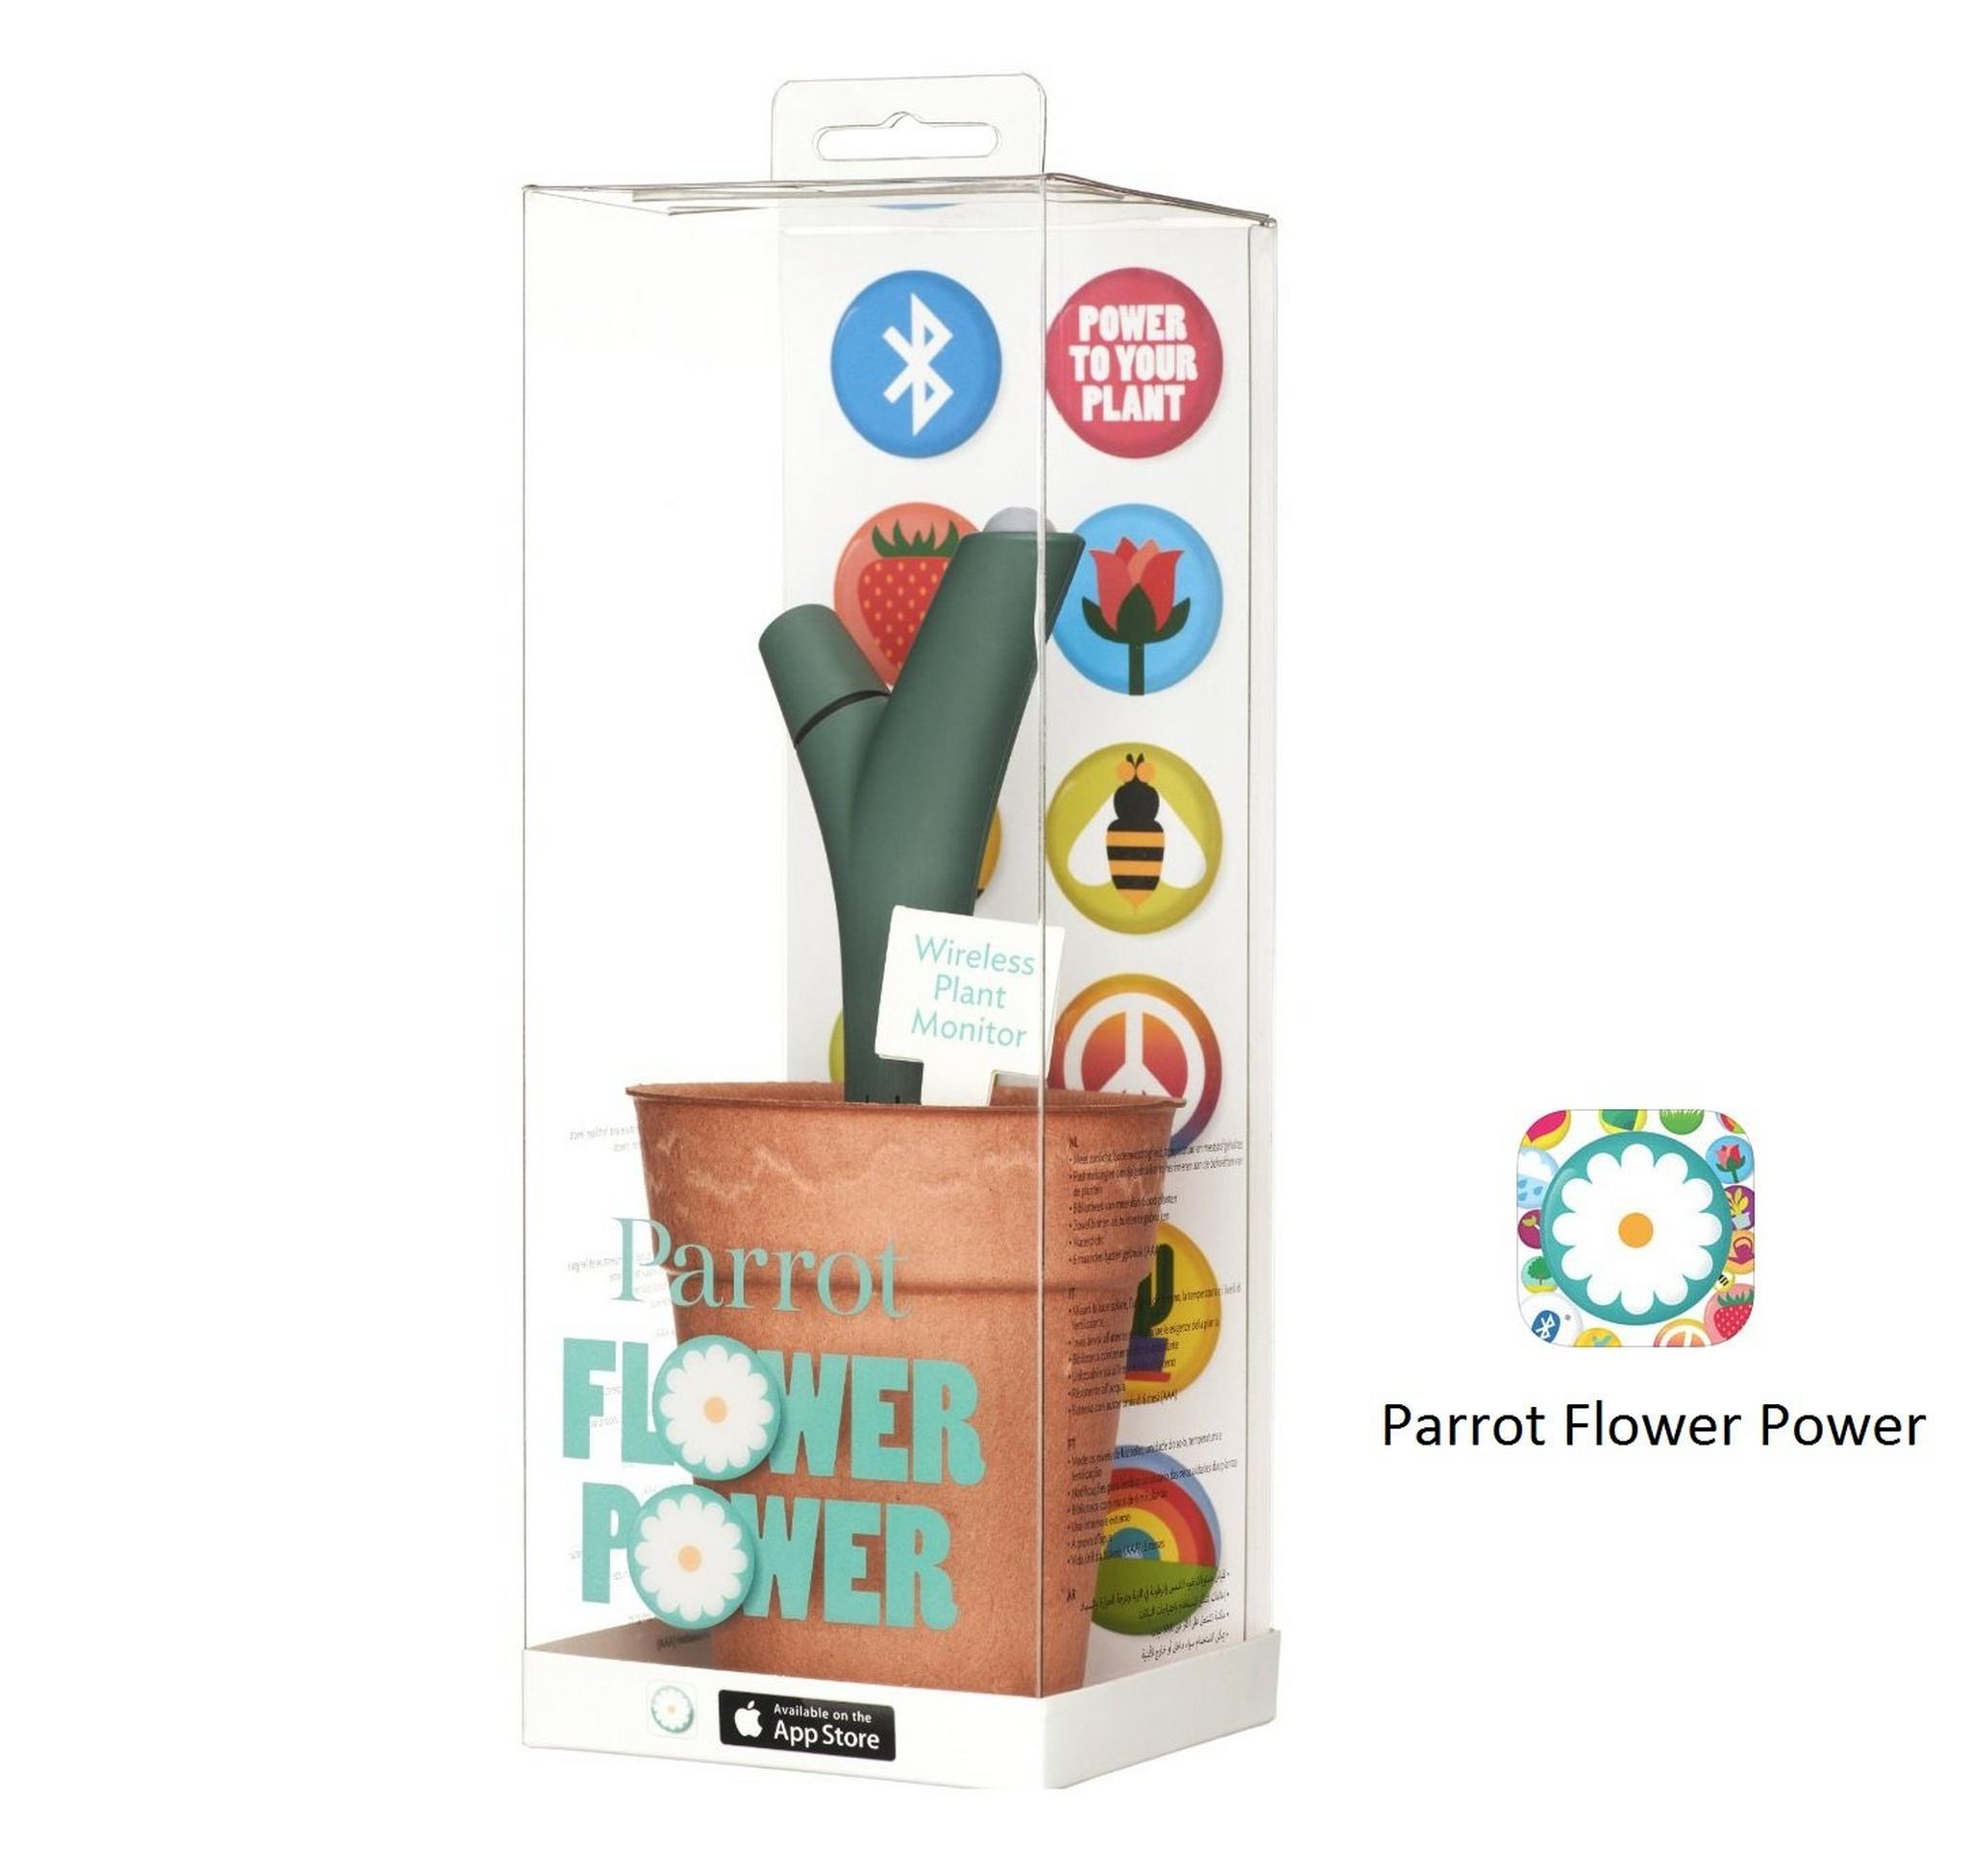 Parrot Flower Power Wireless Bluetooth Sensor - (PF900001AA)- Green